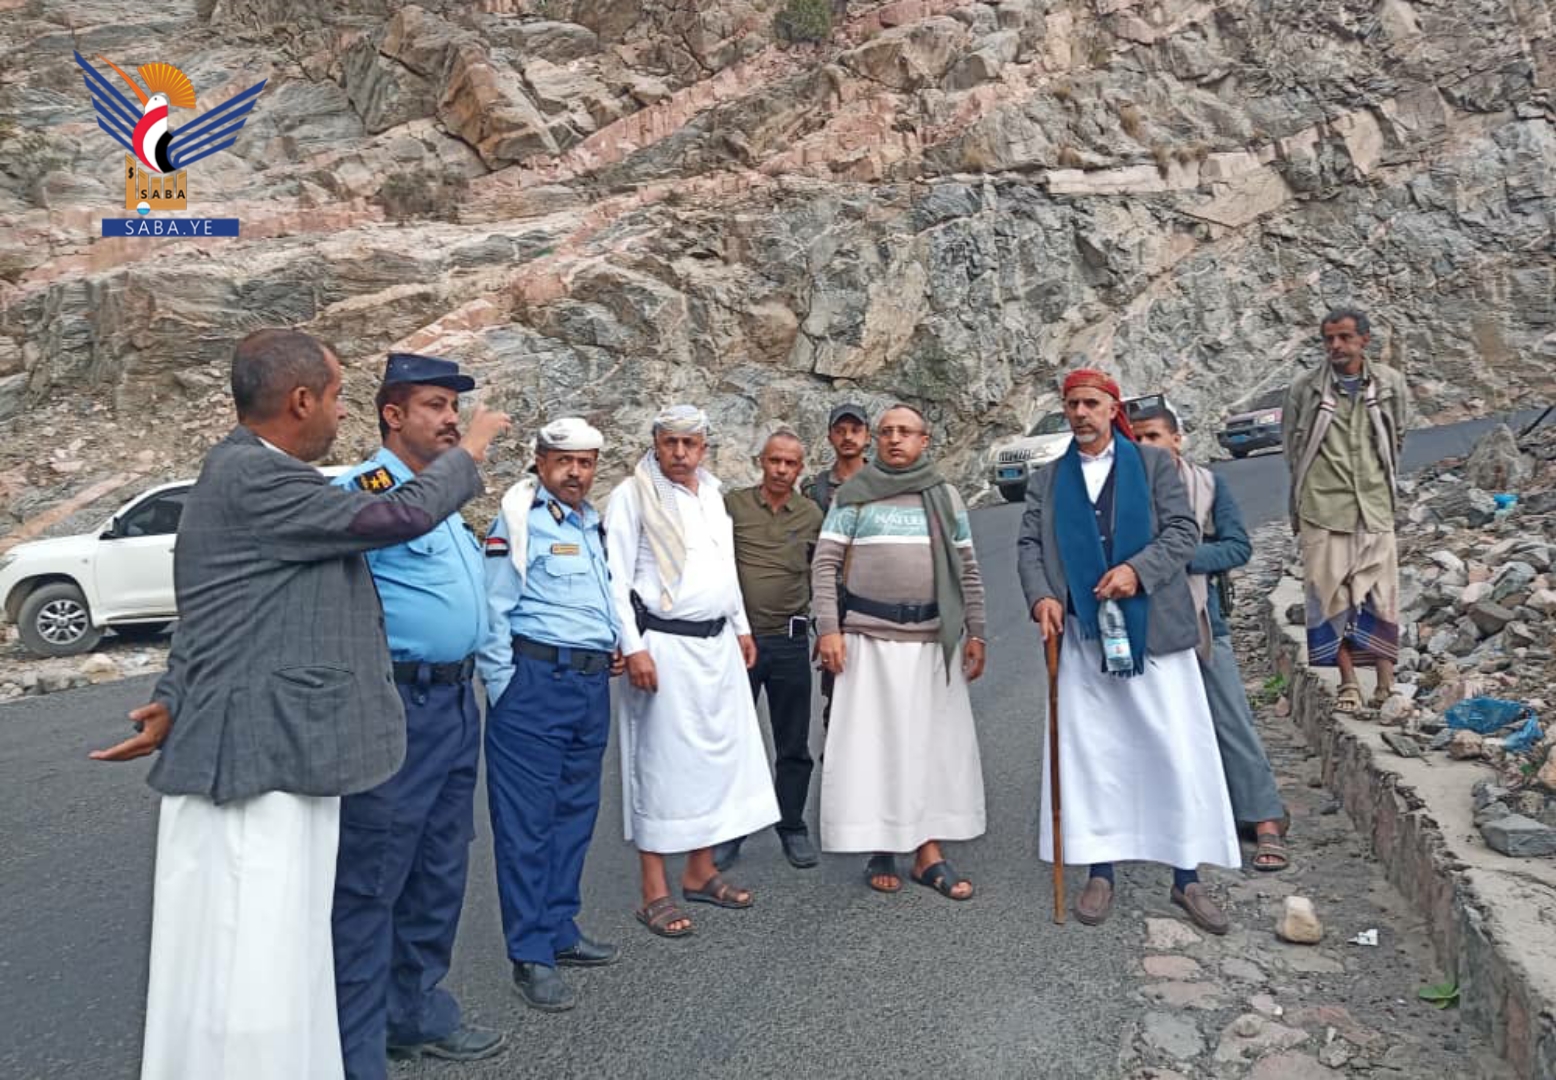 Les routes de Sanaa - Taiz – Lahj inspectées pour étudier les points noirs